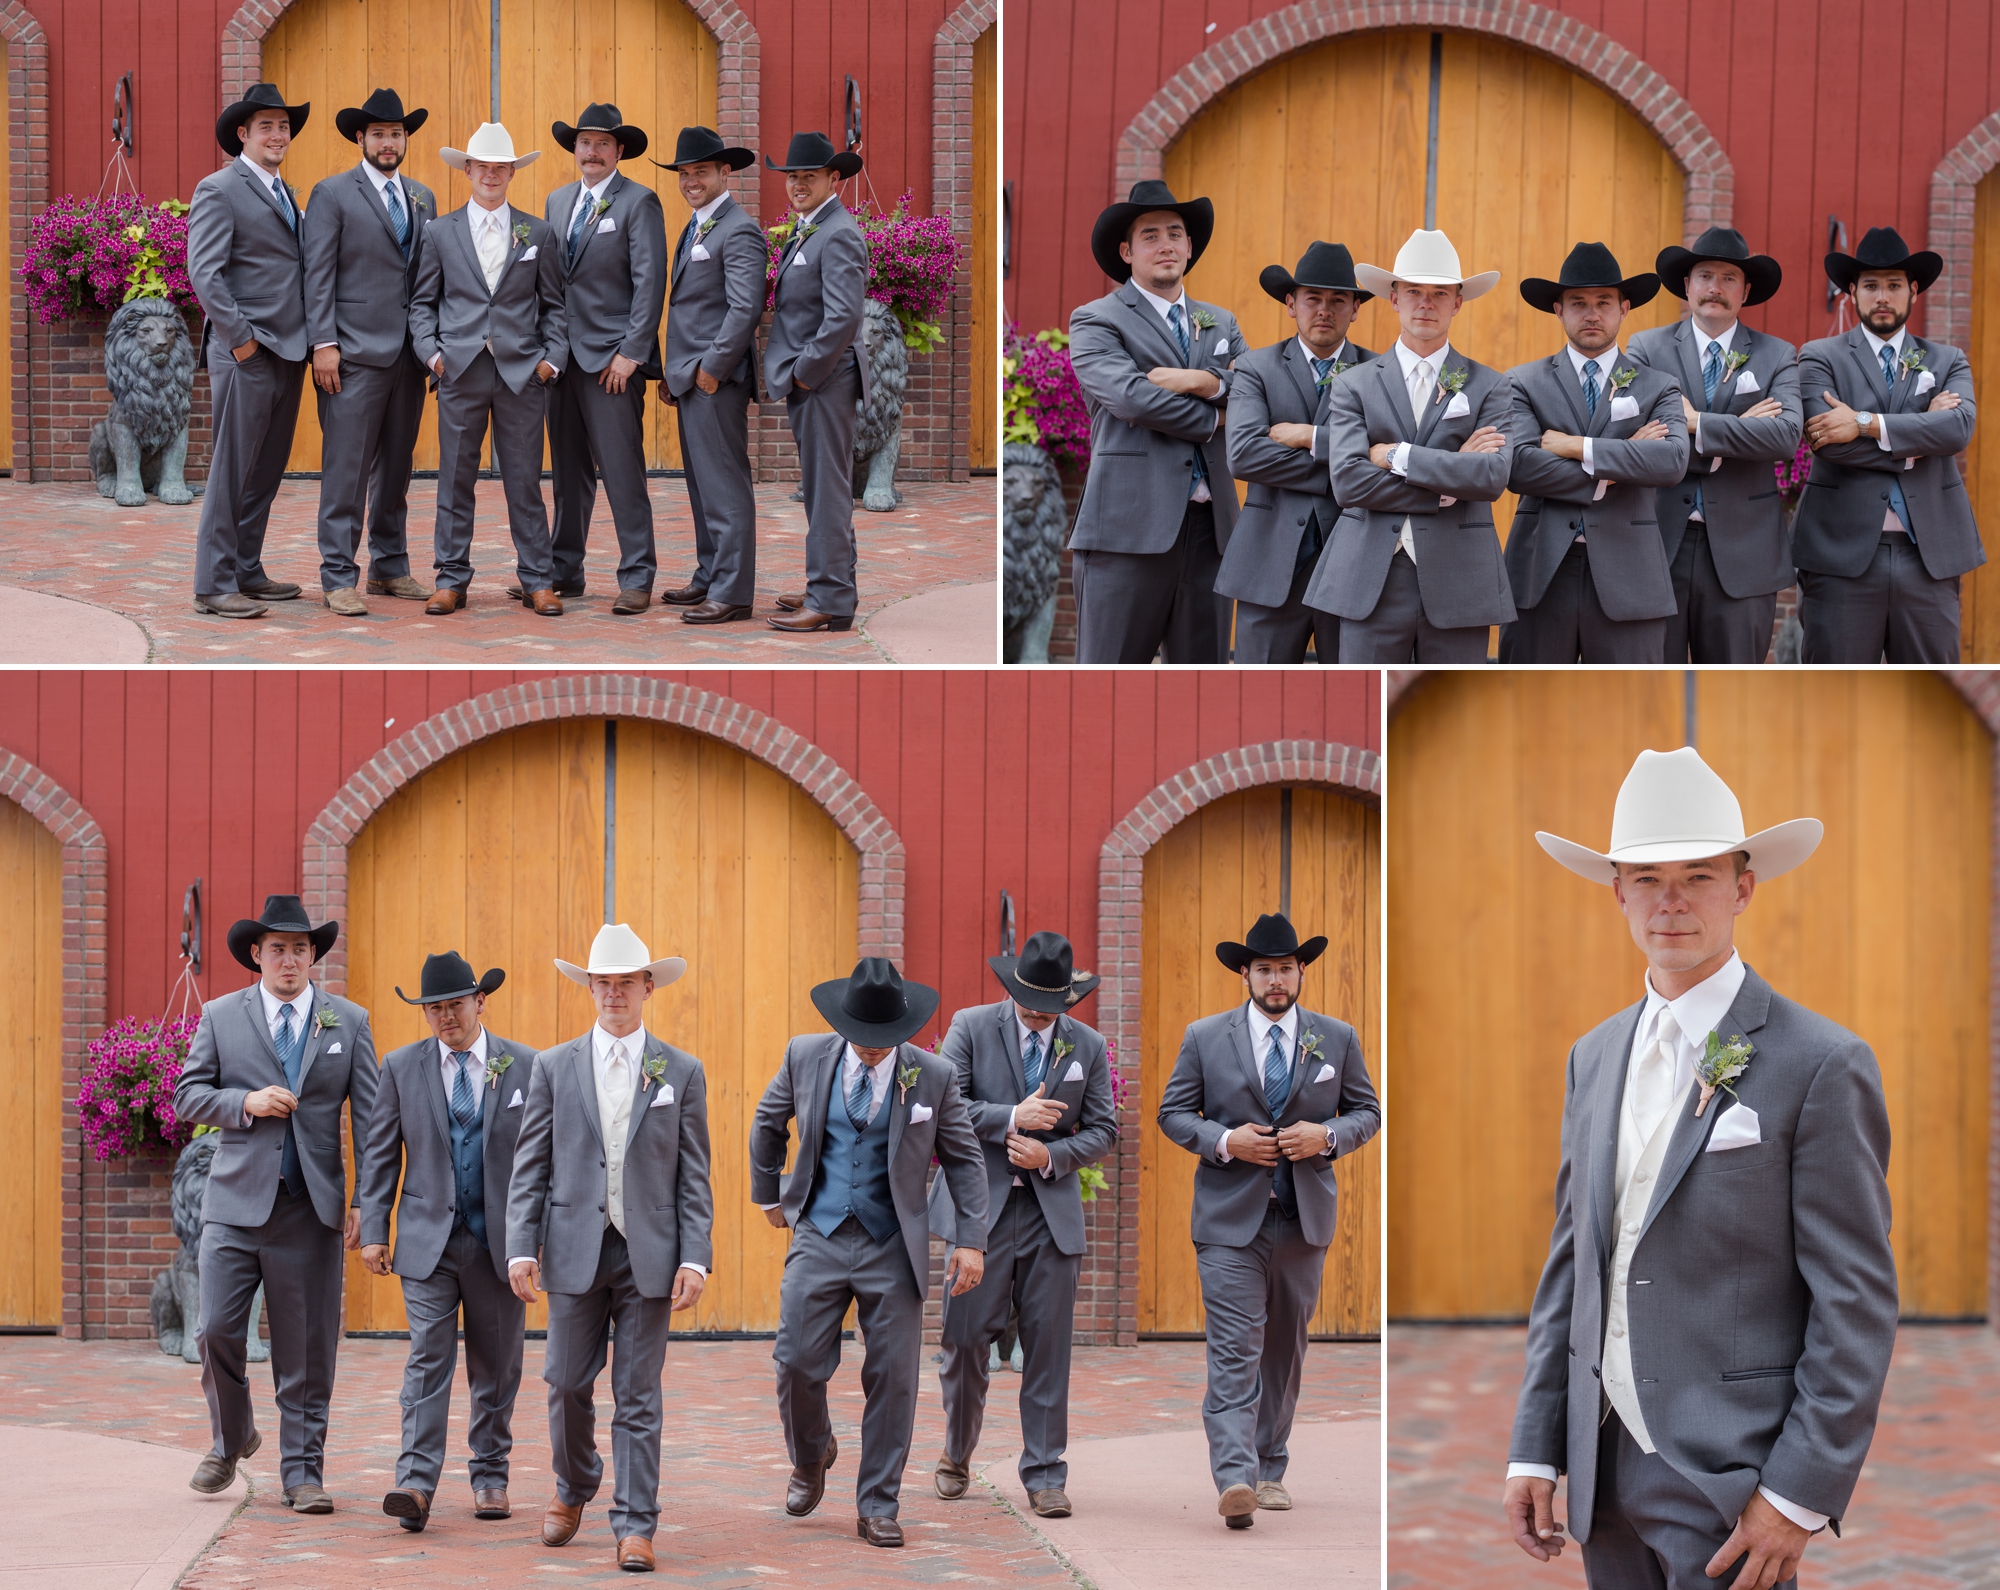 Cowboy groom and groomsmen